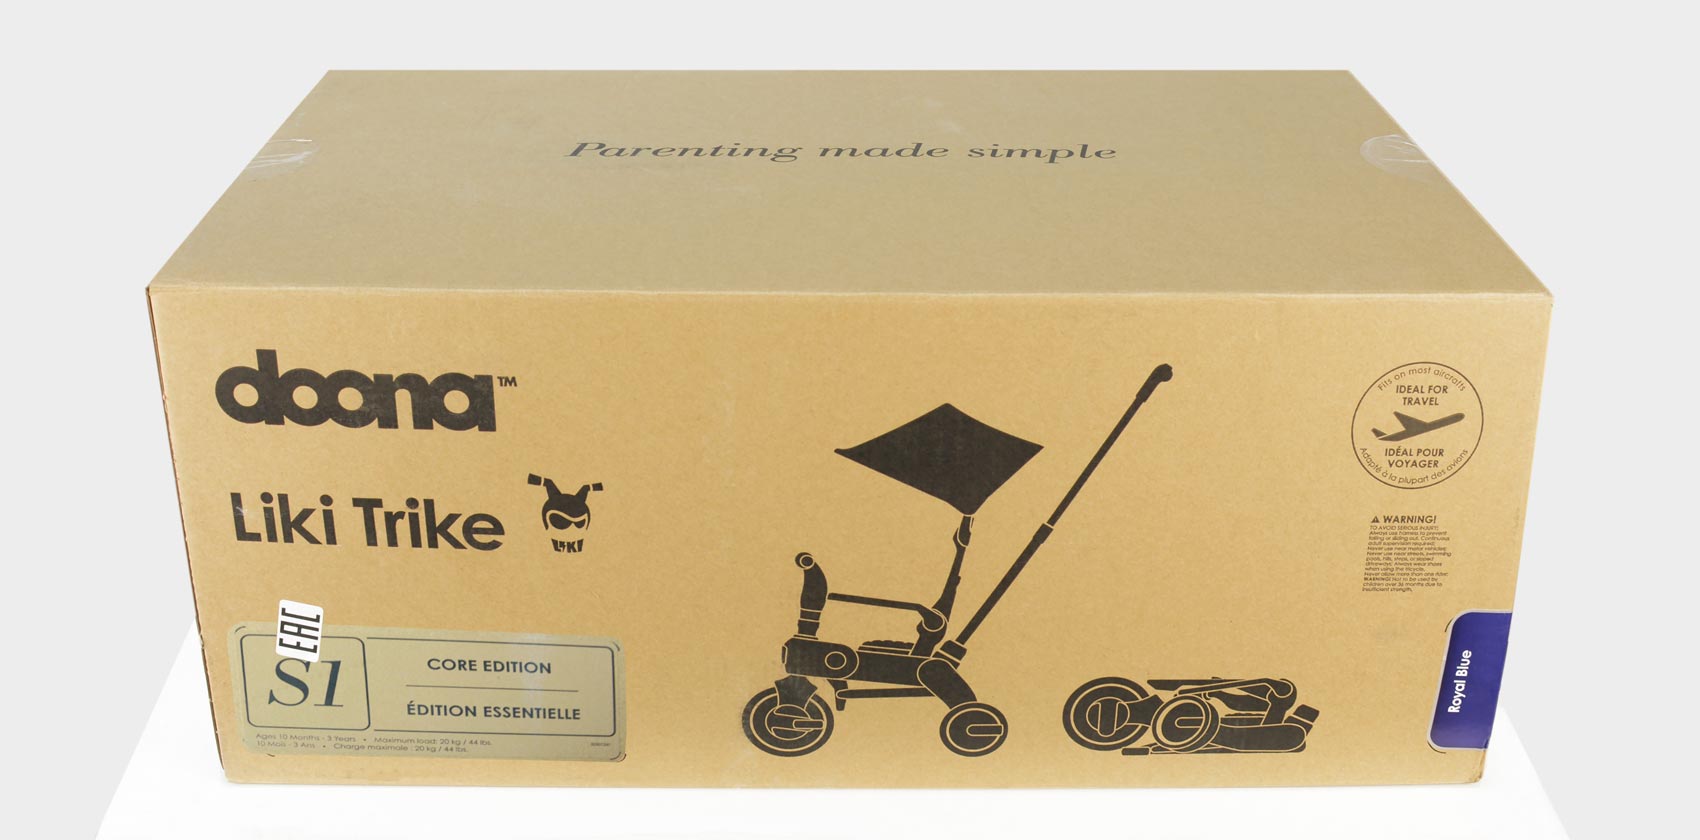 Складной трехколесный велосипед Doona Liki Trike S1 в коробке